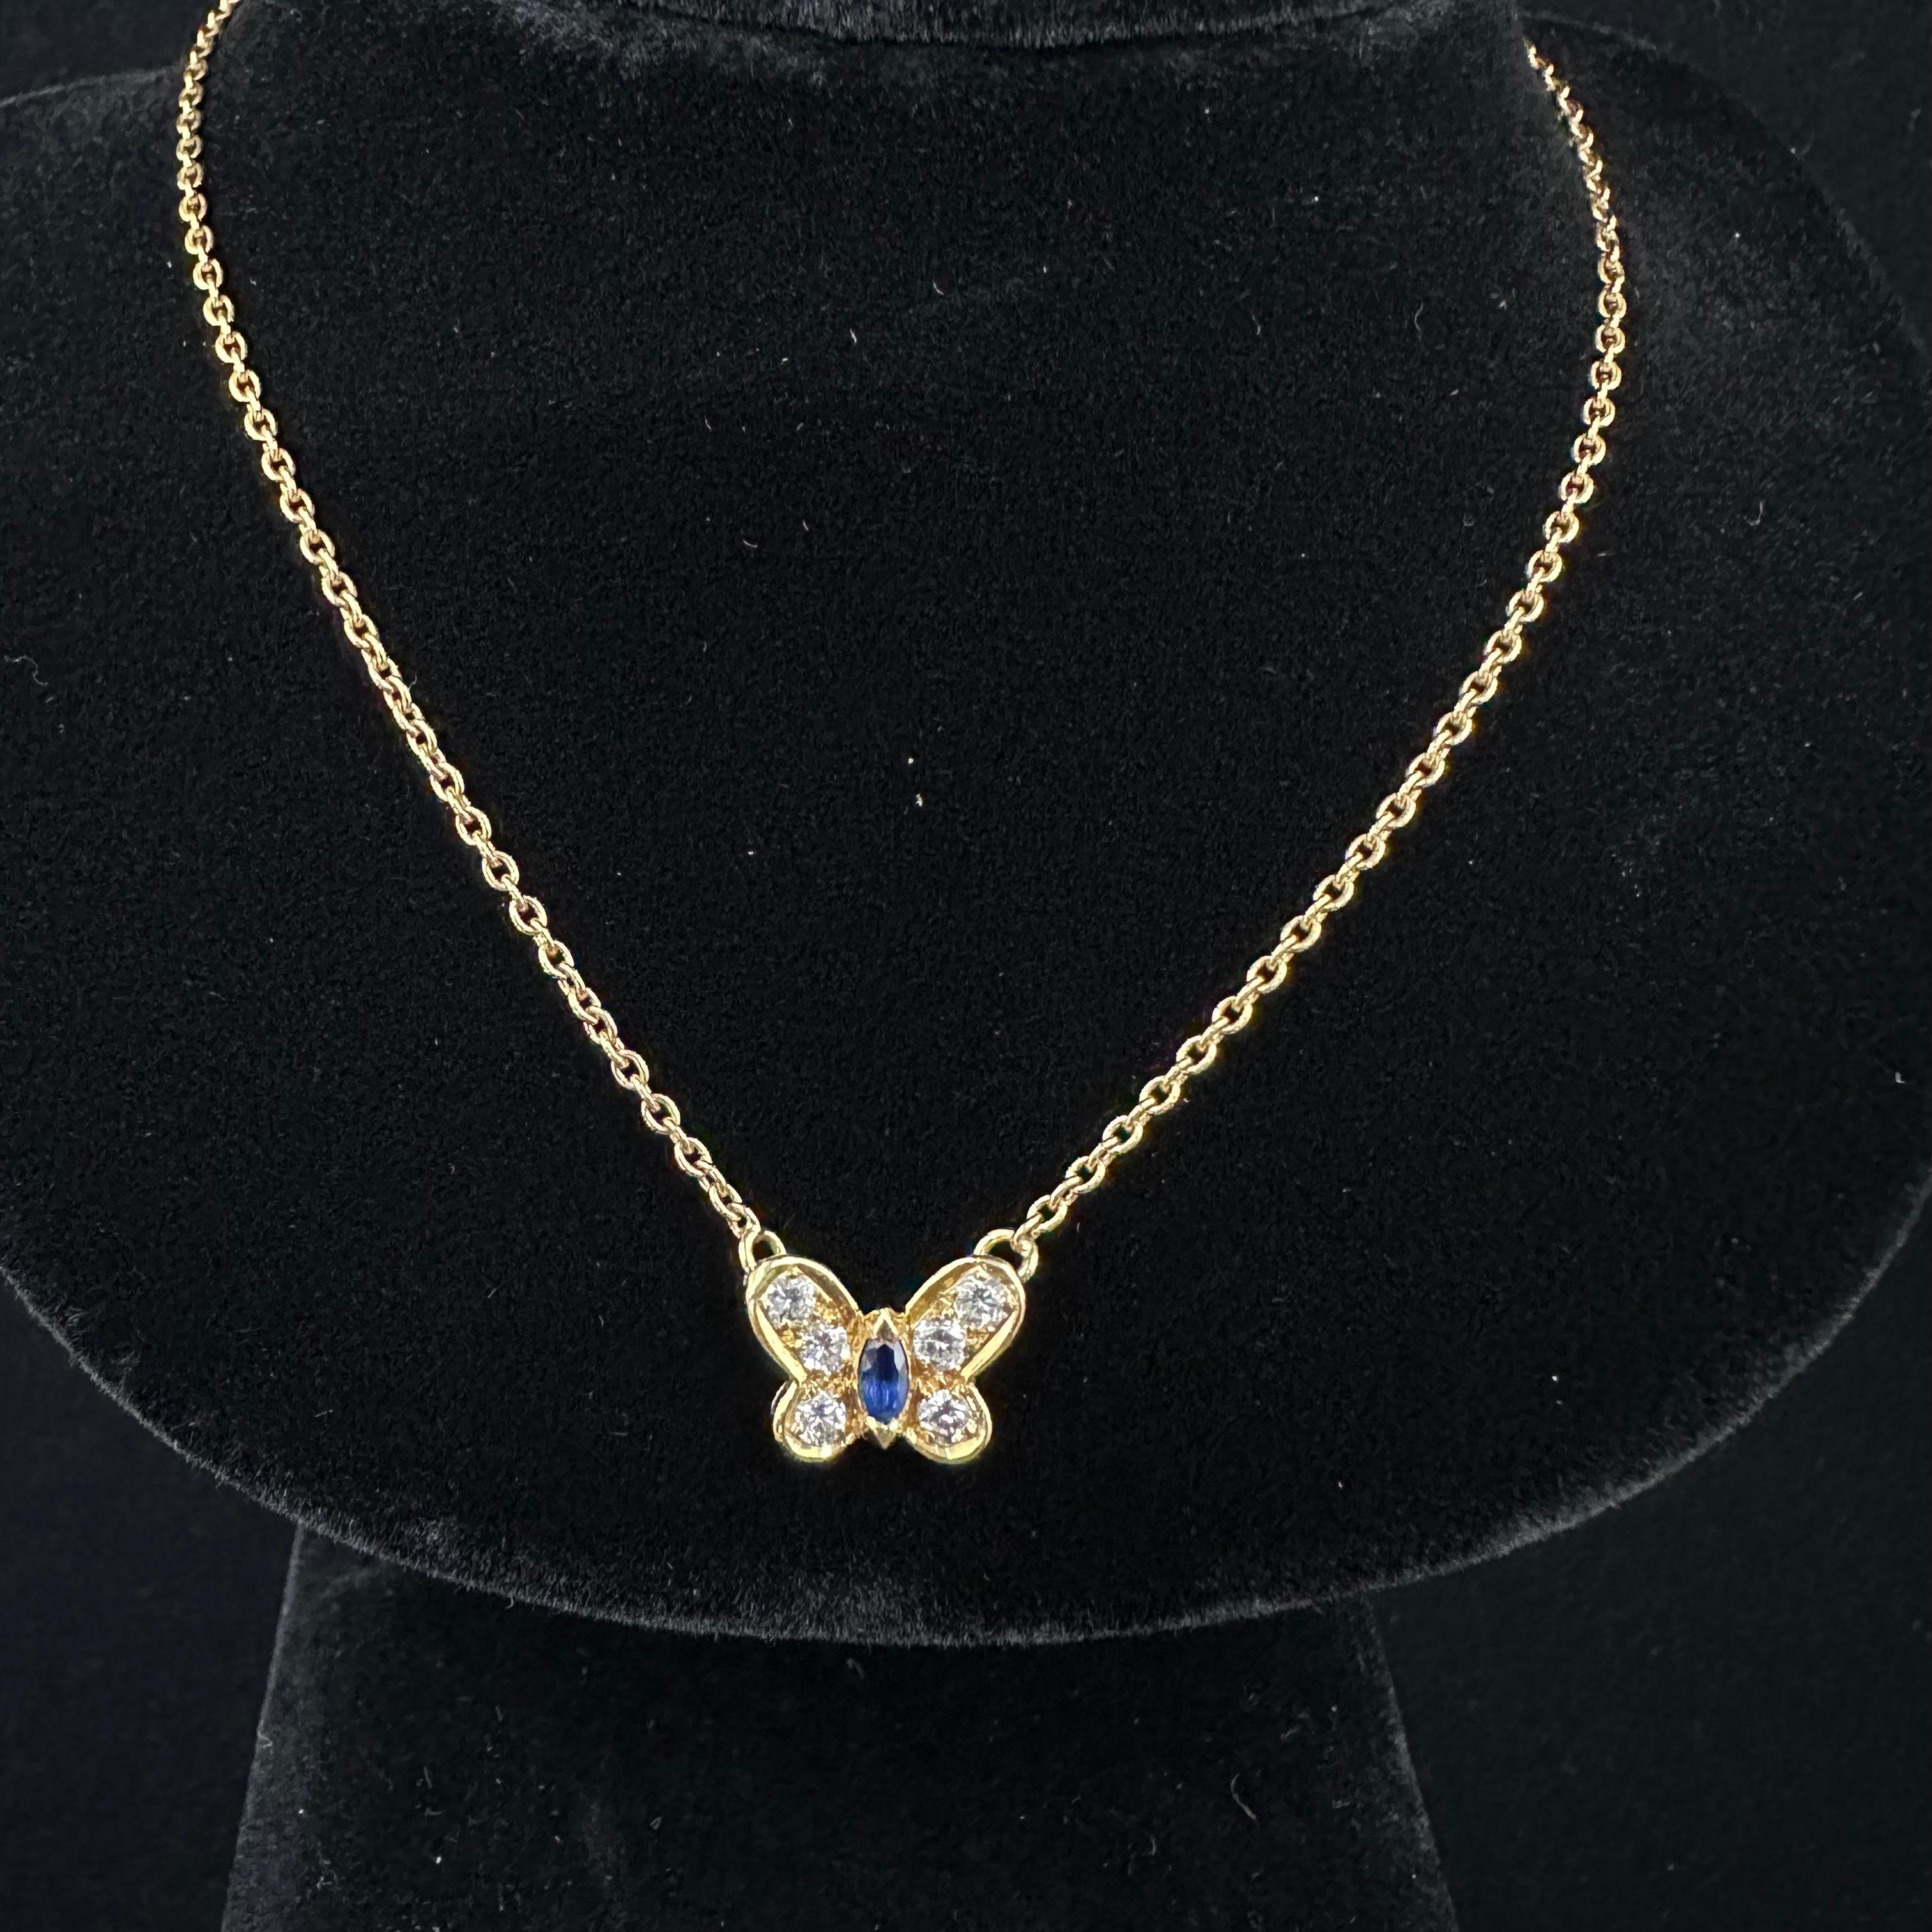 1970's VCA Schmetterling Halskette Blauer Saphir  Marquises schneiden Mitte und Six Rounds. Gepunzt vca 750 Nummeriert
 18-Zoll-Halskette einstellbar auf 16
Ungeschliffene originale Patina,
 
